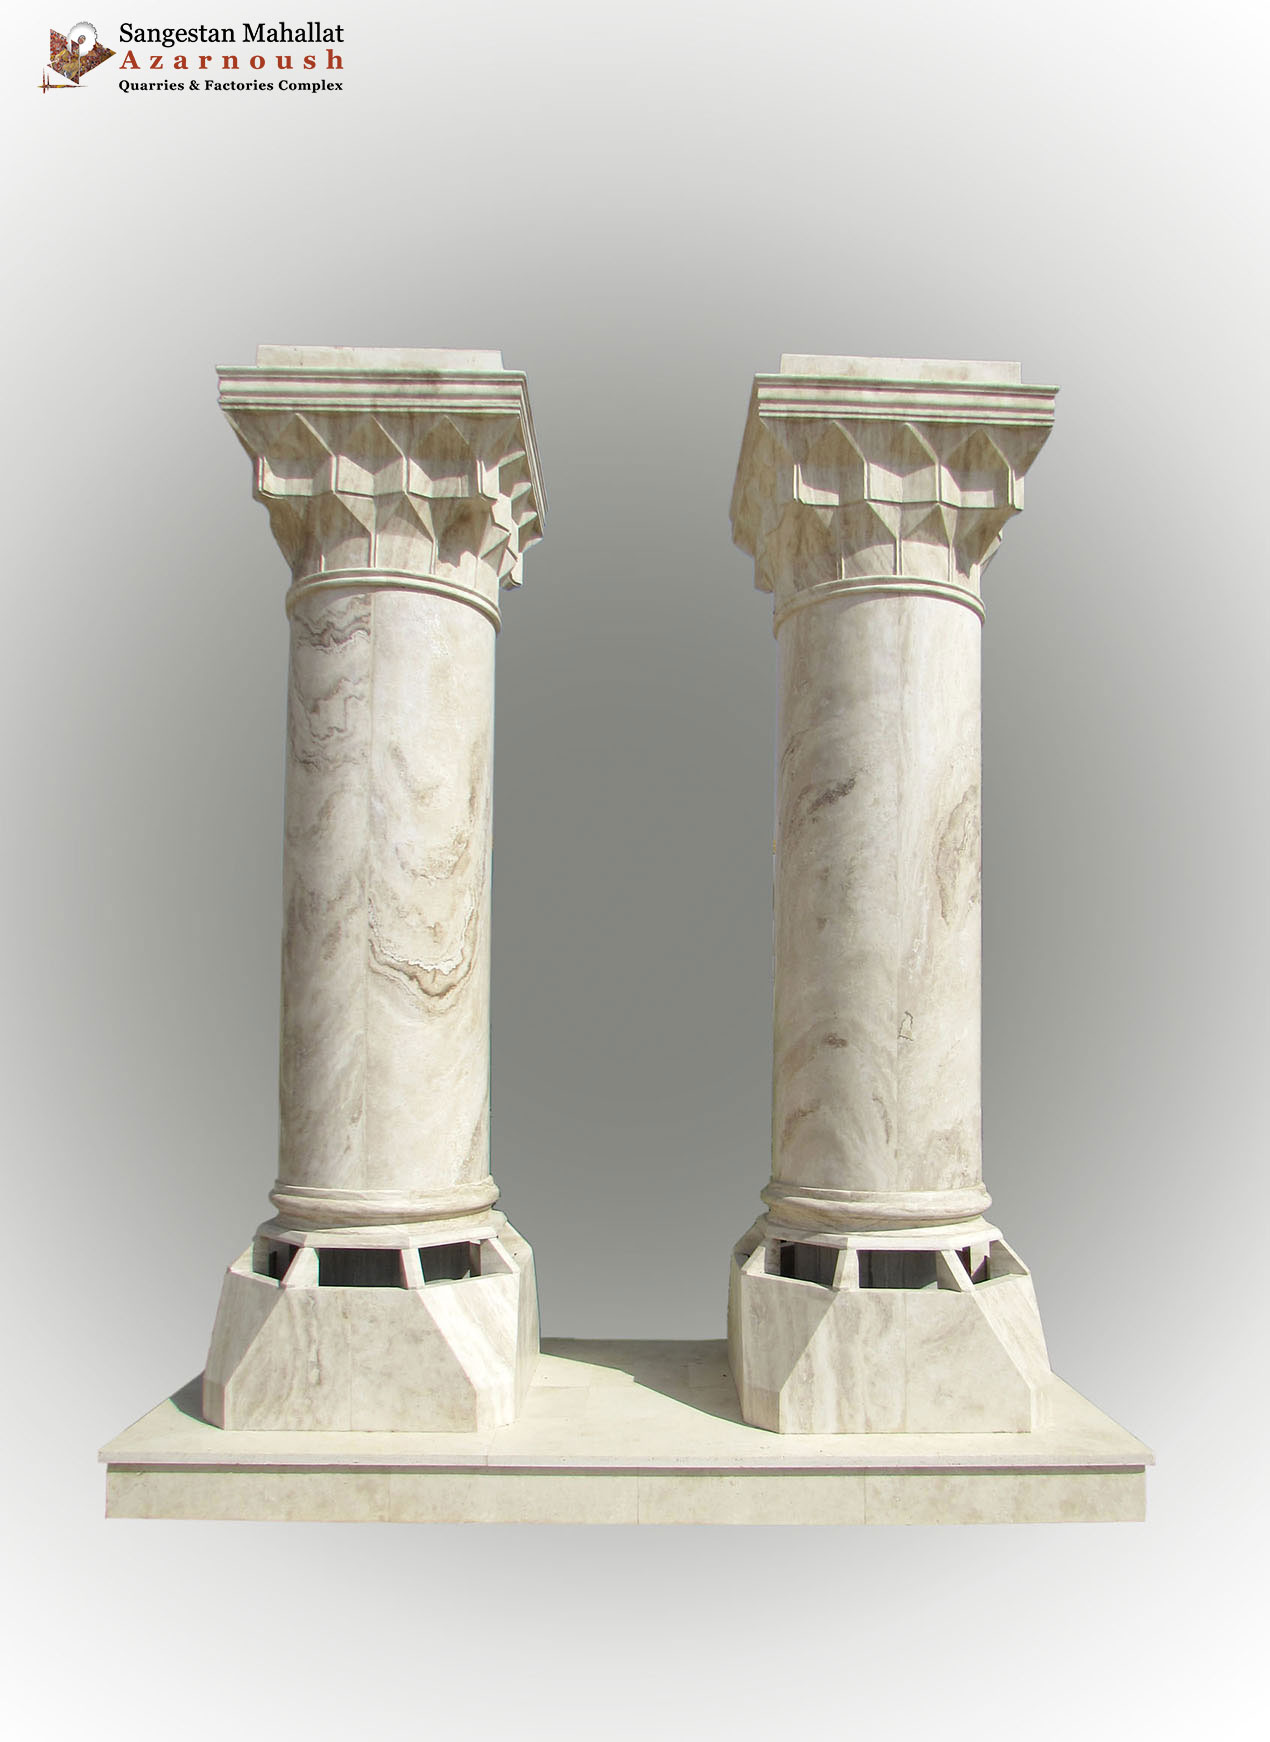 Statue of "Stone Pillars"